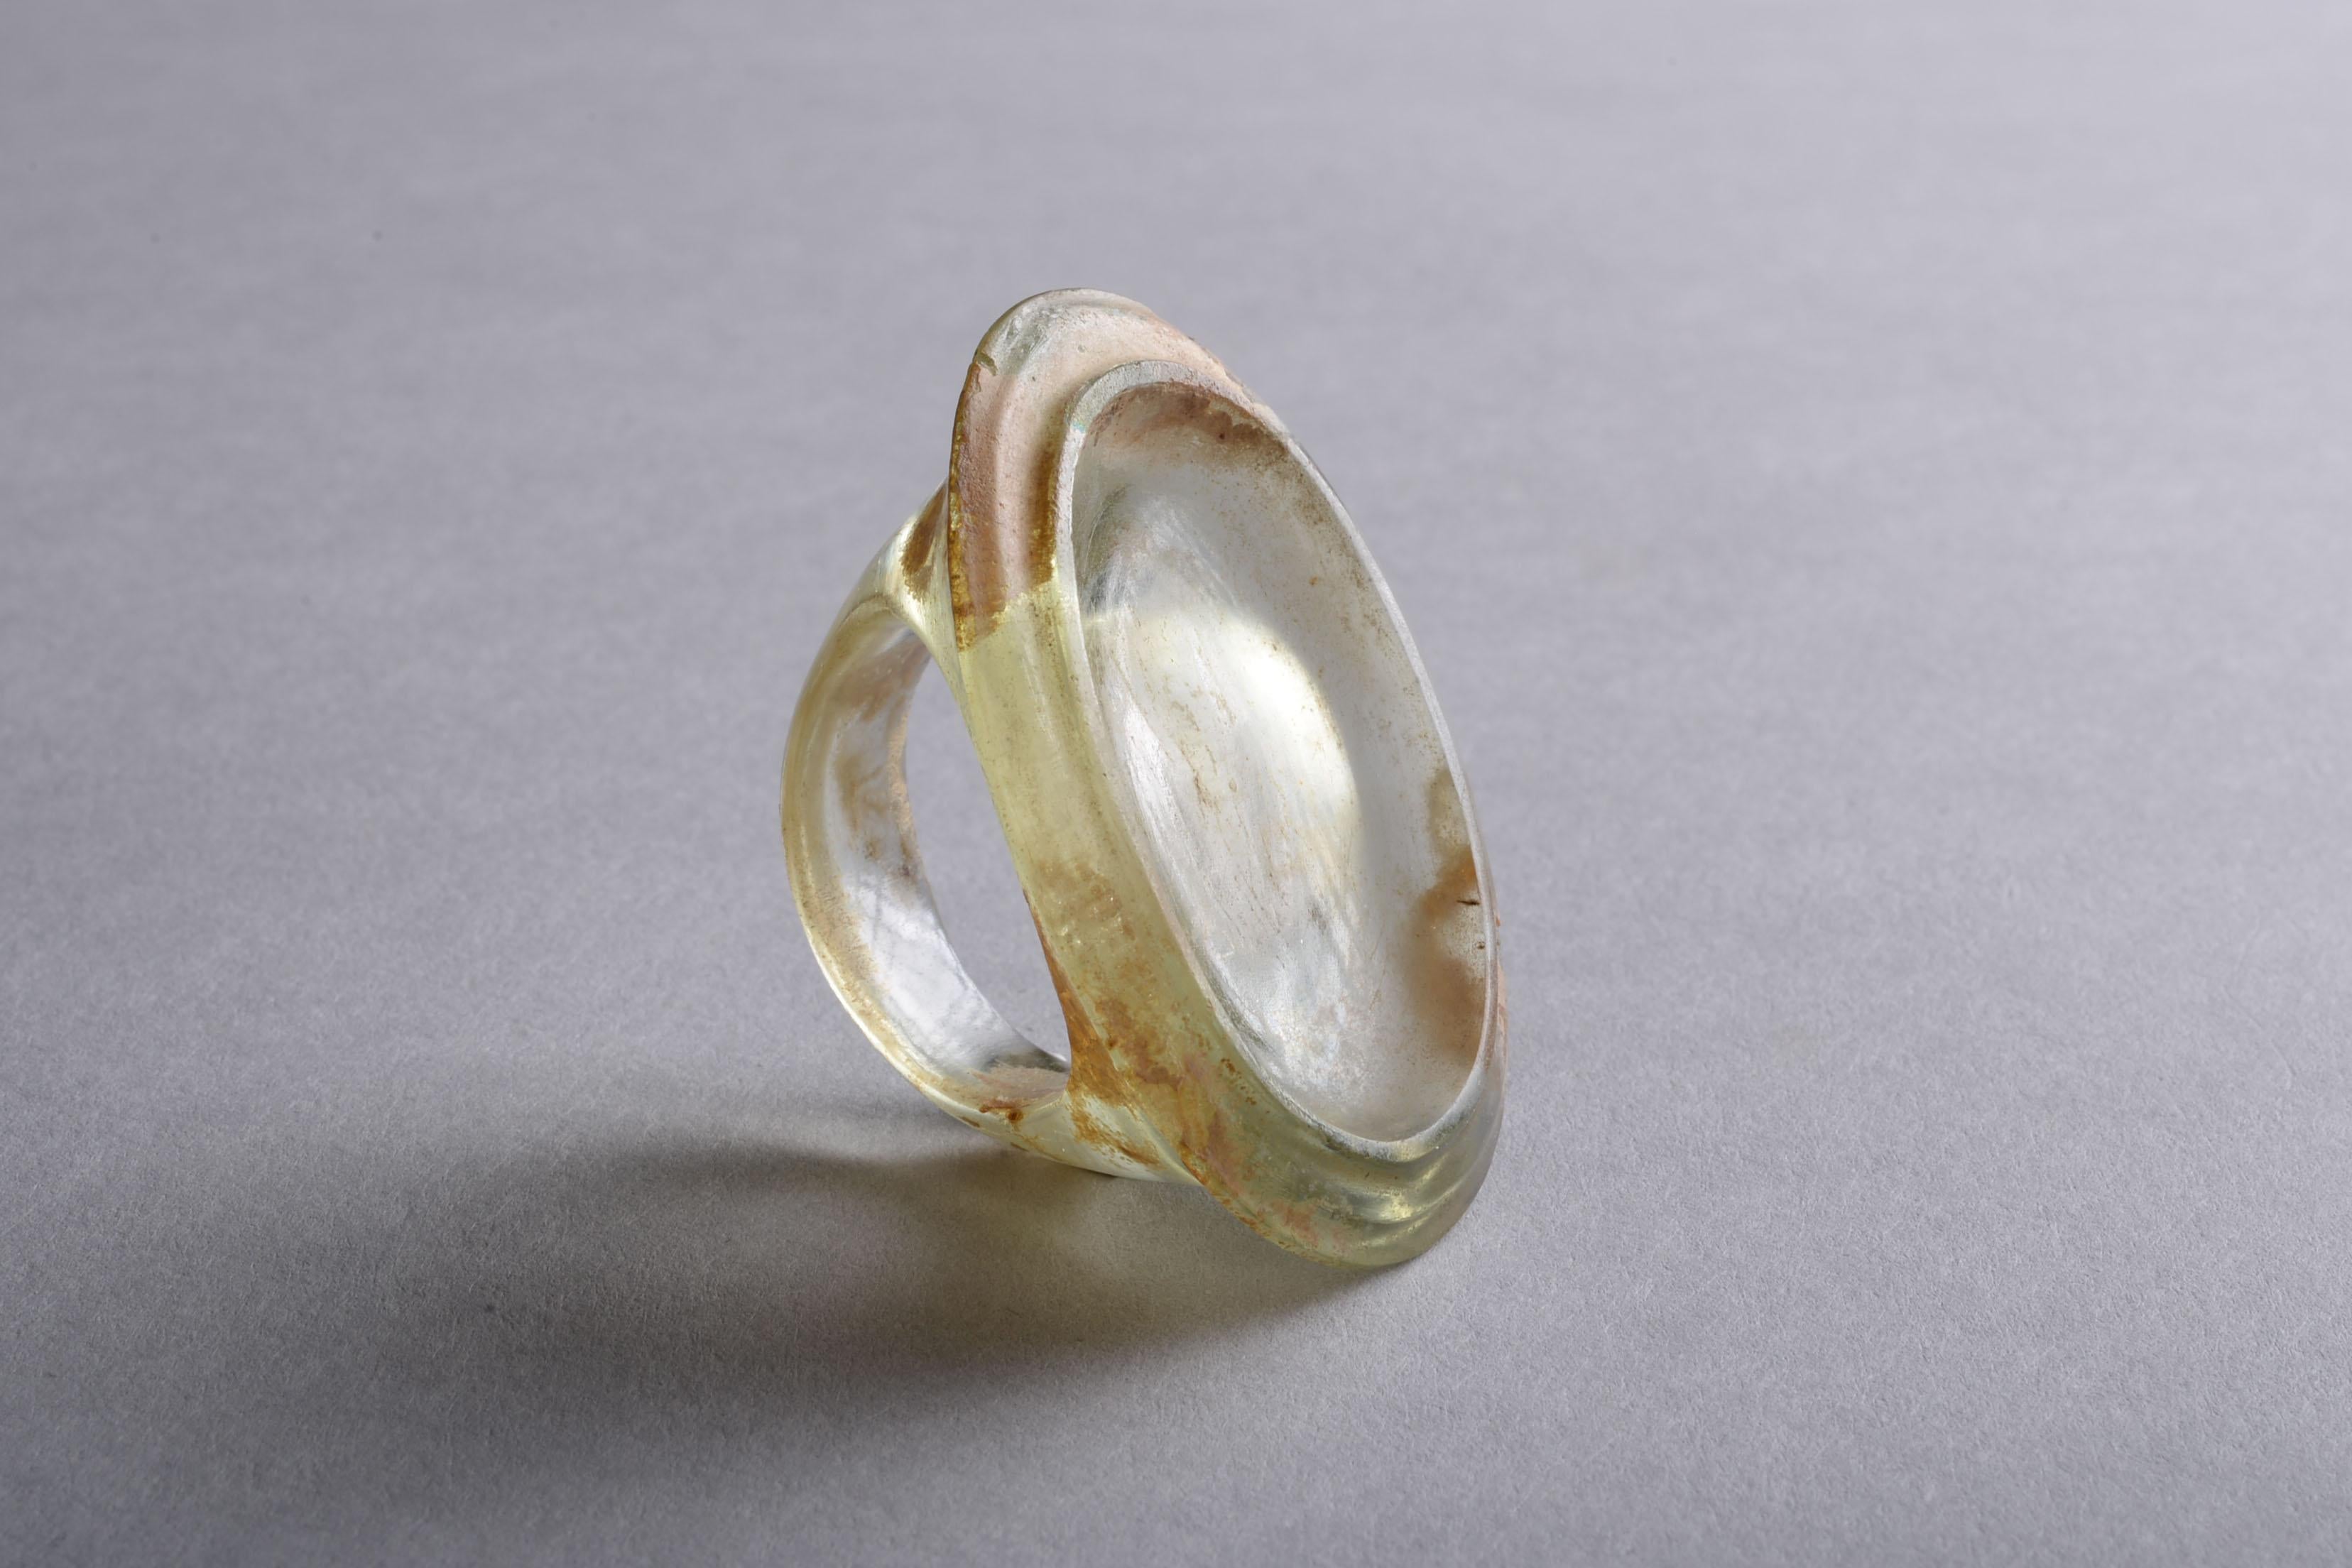 Dieser schön erhaltene Ring wurde aus hellgrünem, transparentem Glas gegossen. Seine Größe und Form sind typisch für hellenistische Fingerringe, und seine heute leere ovale Lünette war ursprünglich wohl verziert.

In hellenistischer Zeit wurde